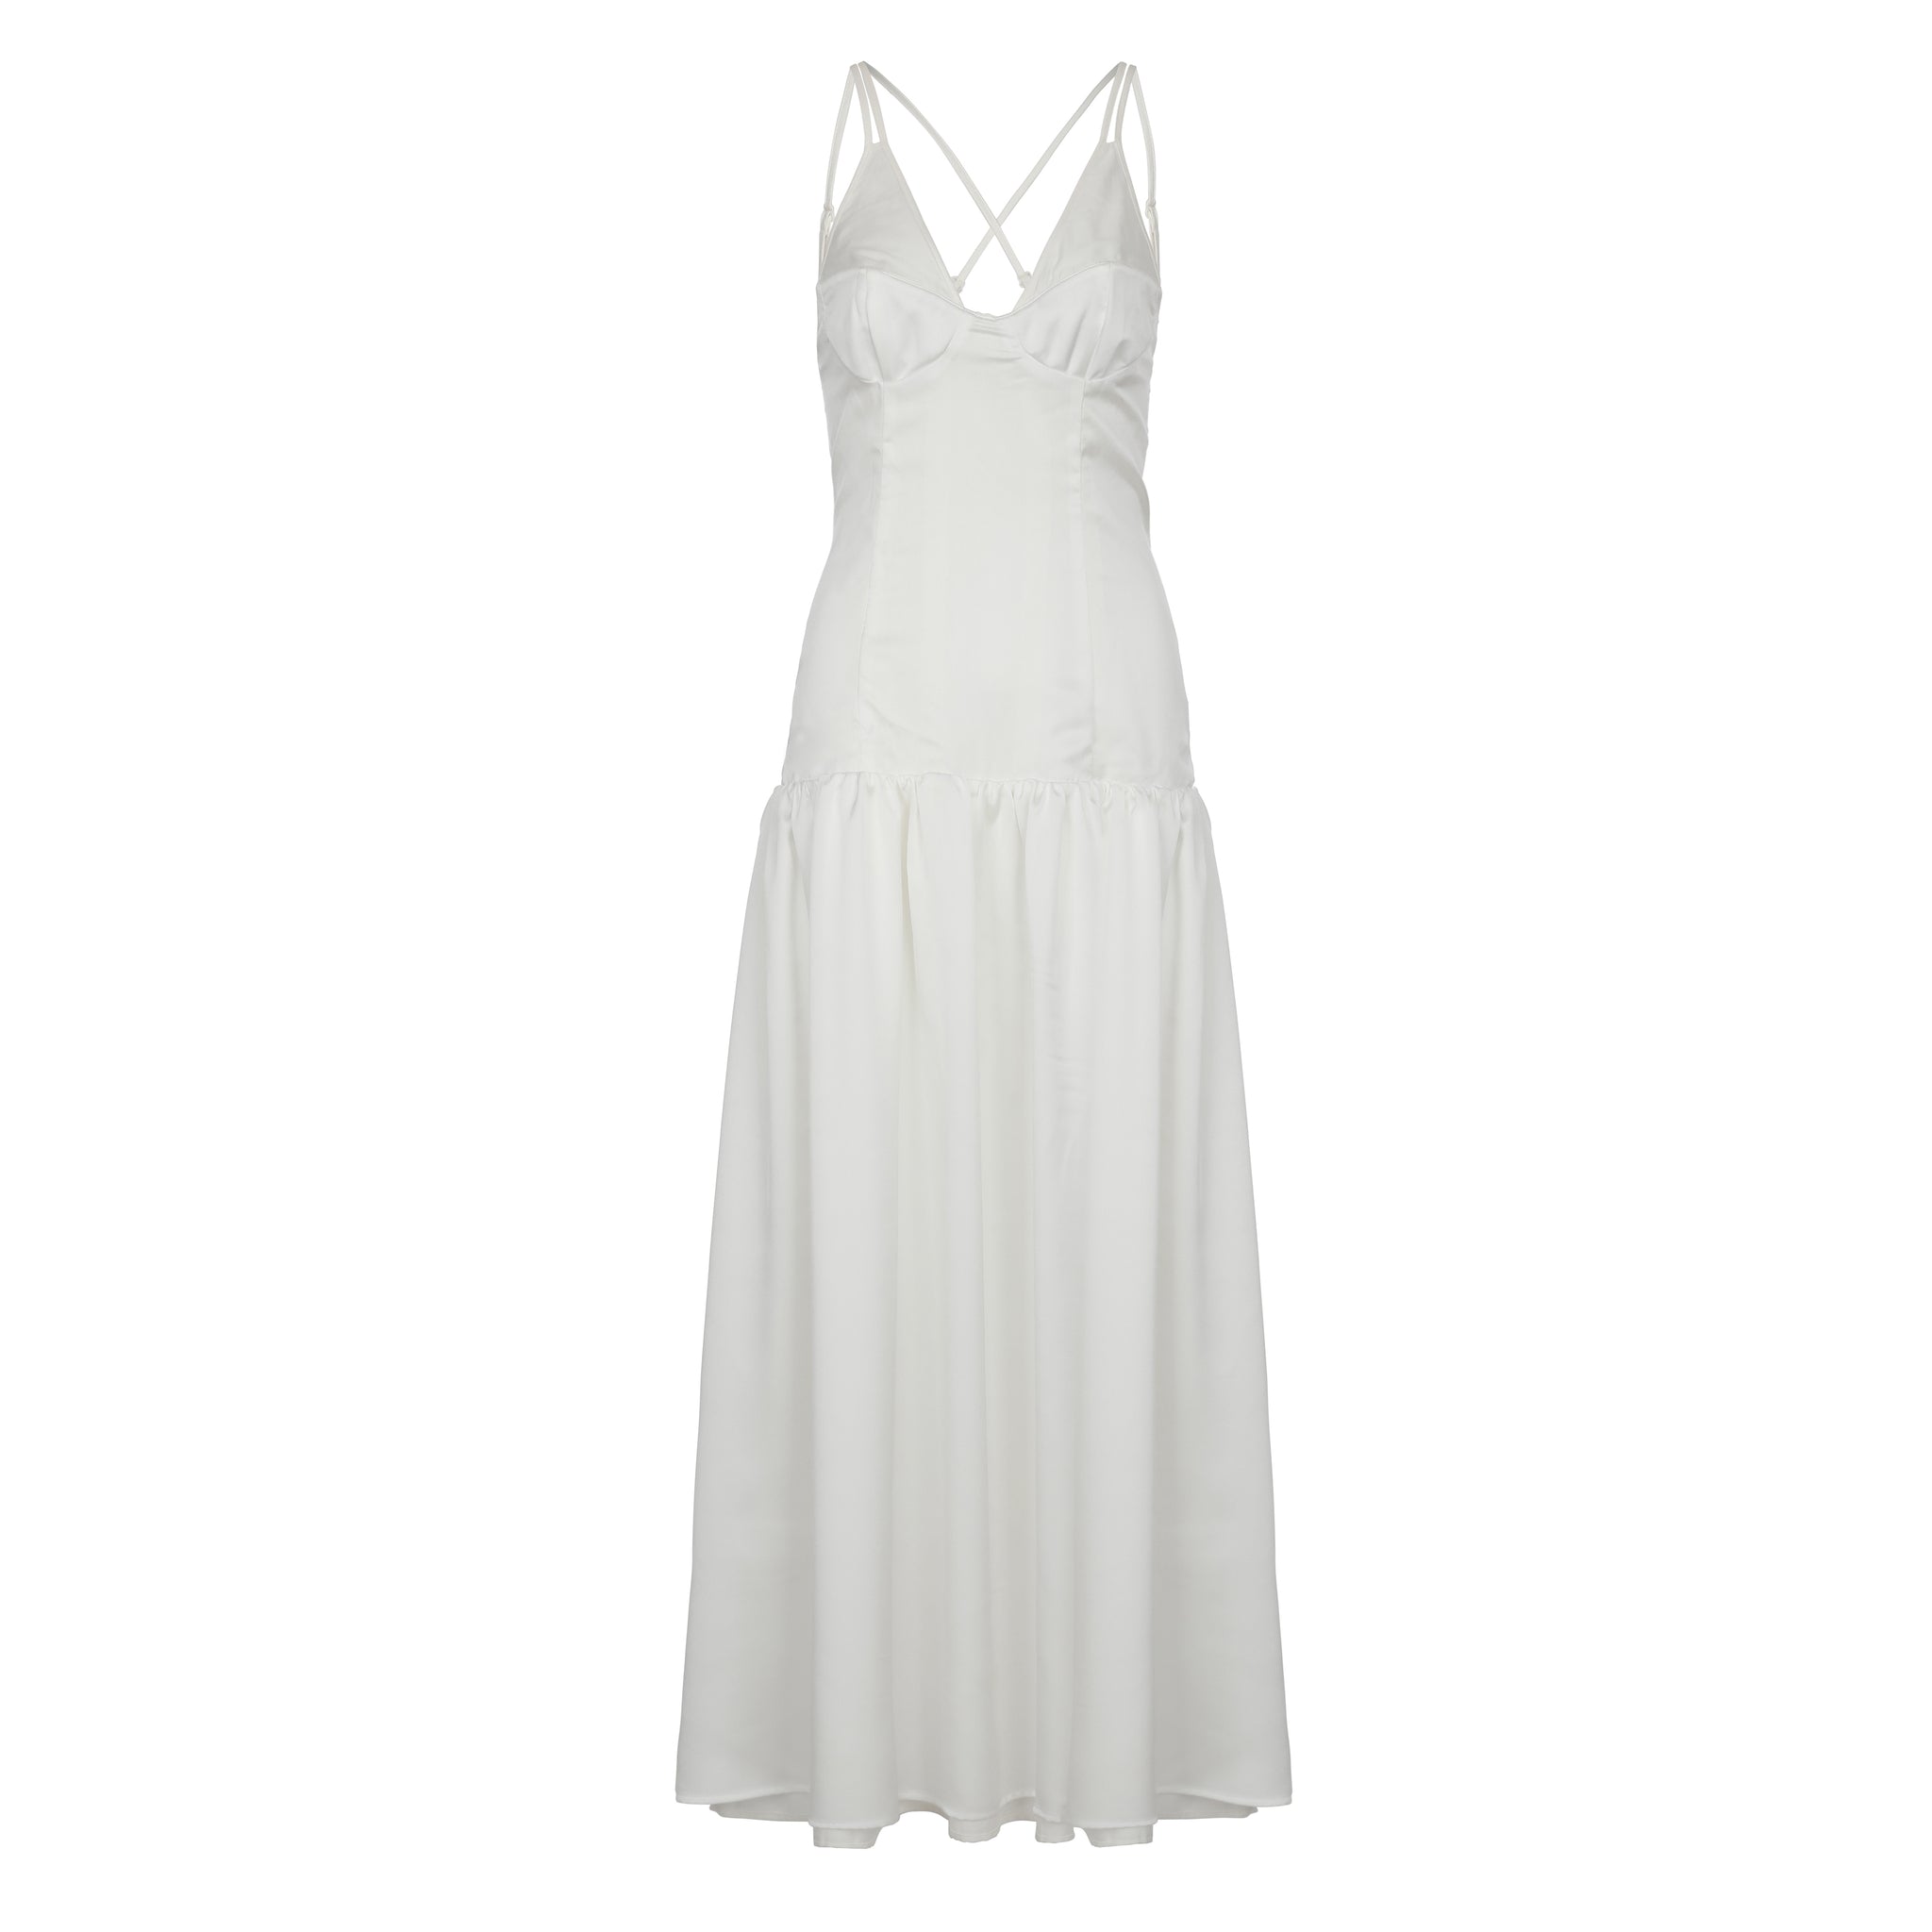 Honeymoon Dress - White